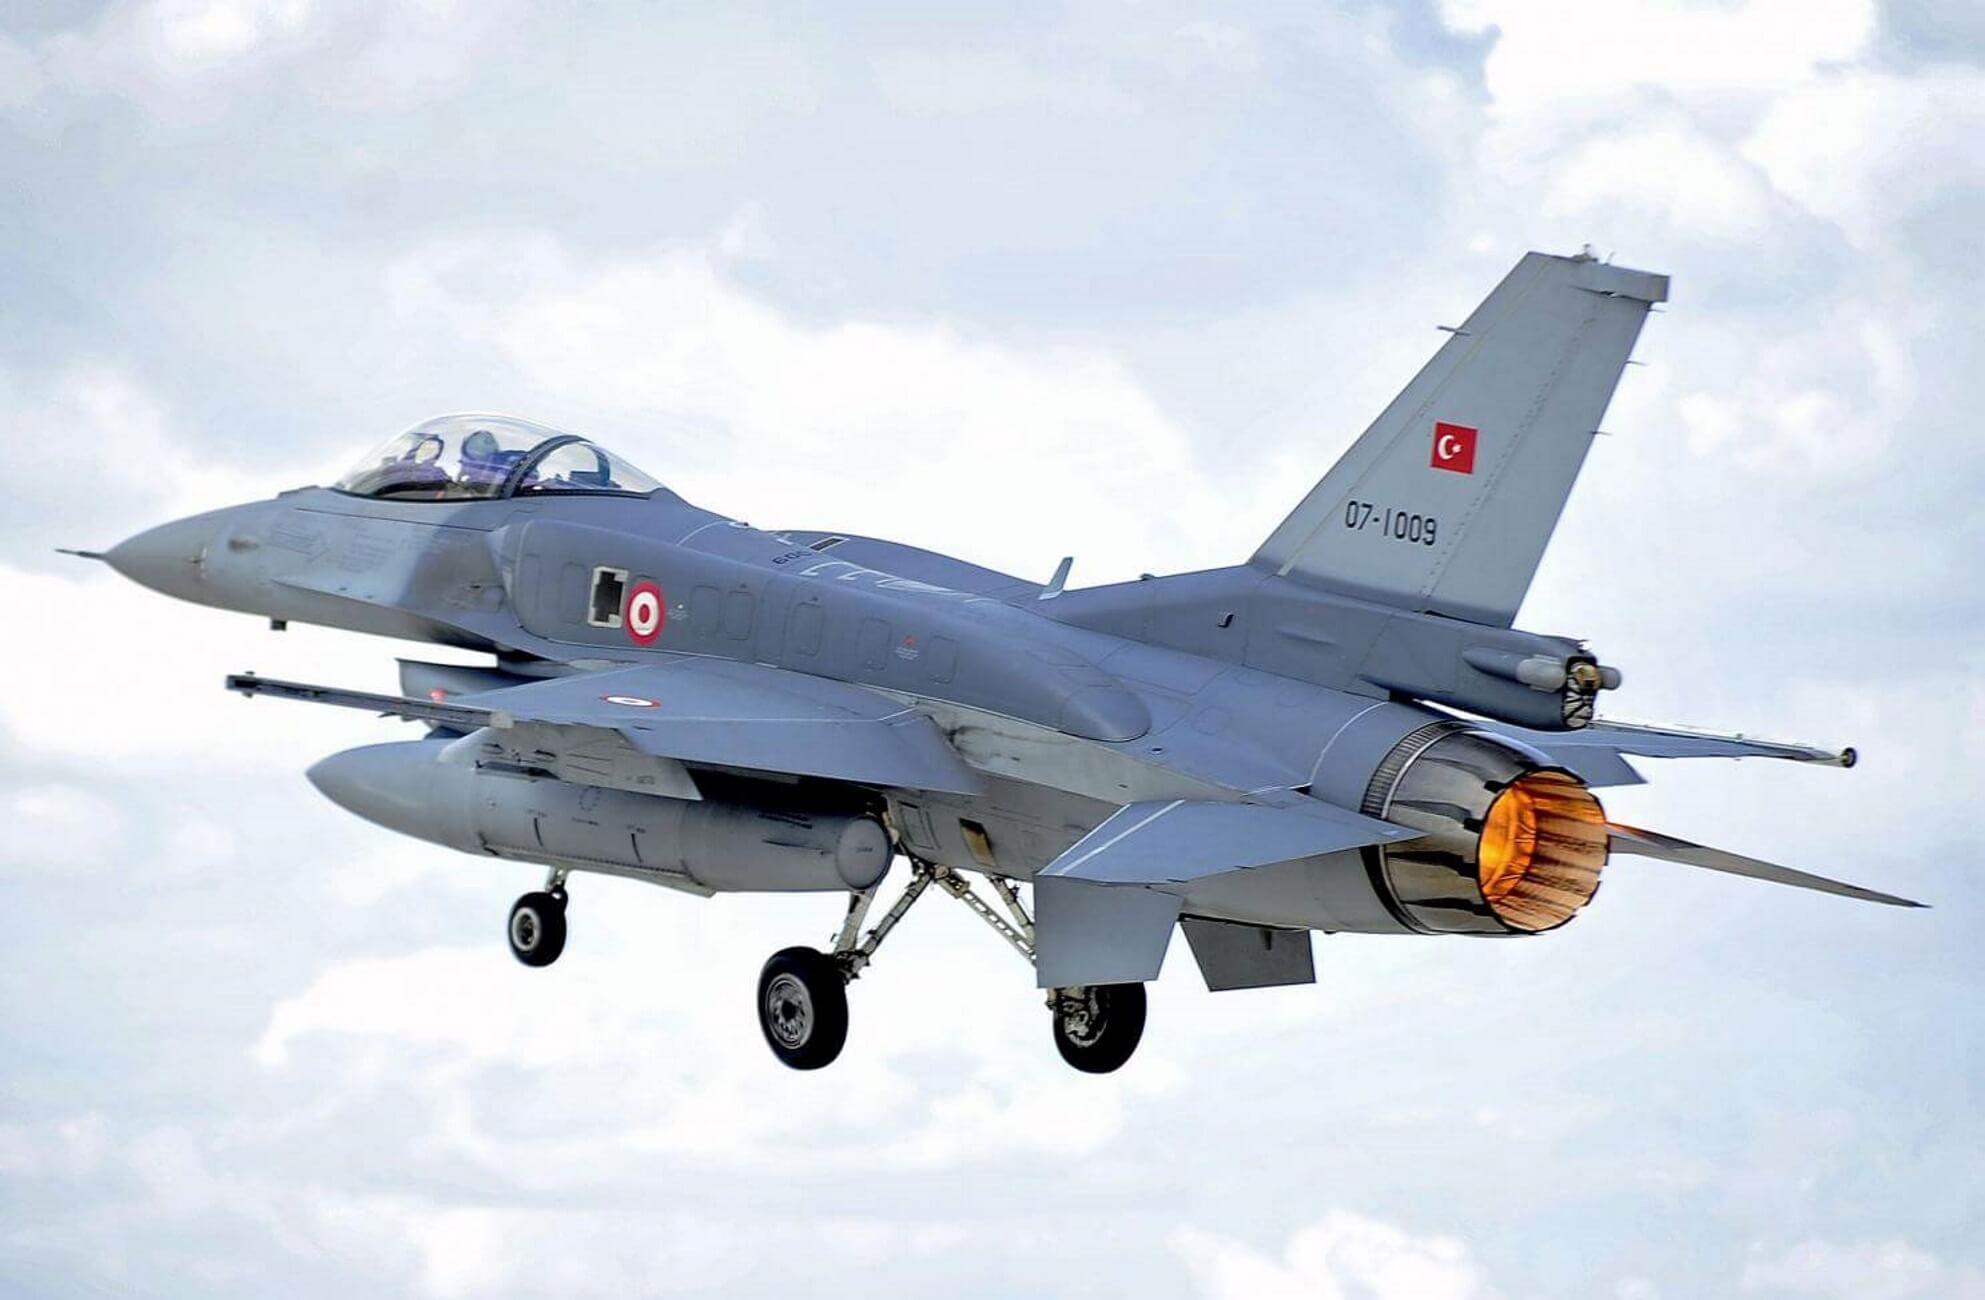 Οι Τούρκοι πραγματοποίησαν 38 παραβιάσεις του εθνικού εναέριου χώρου στο Αιγαίο